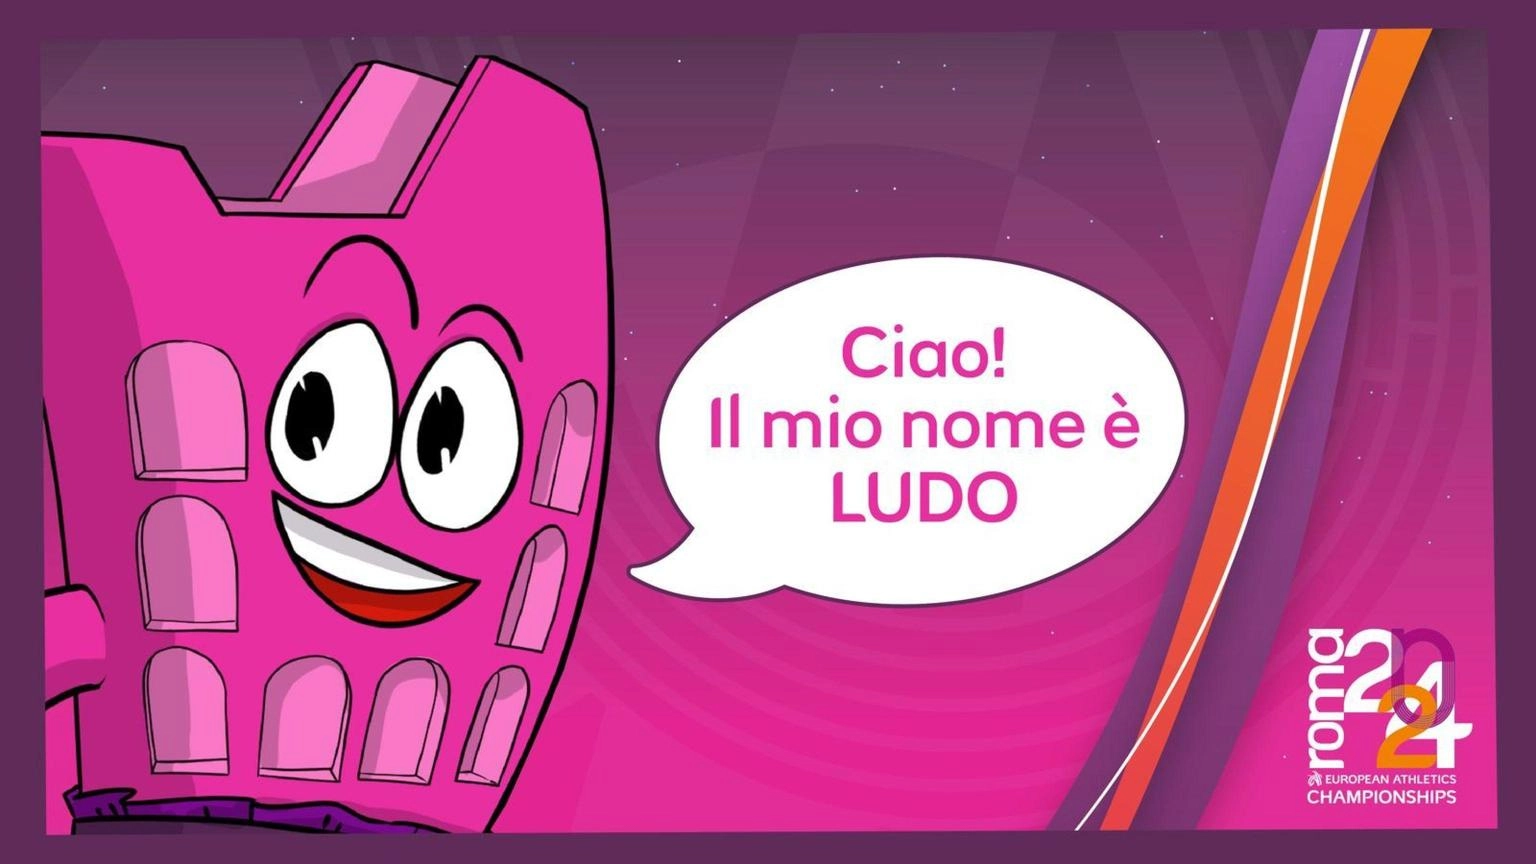 Atletica: mascotte degli Europei a Roma si chiama "Ludo"